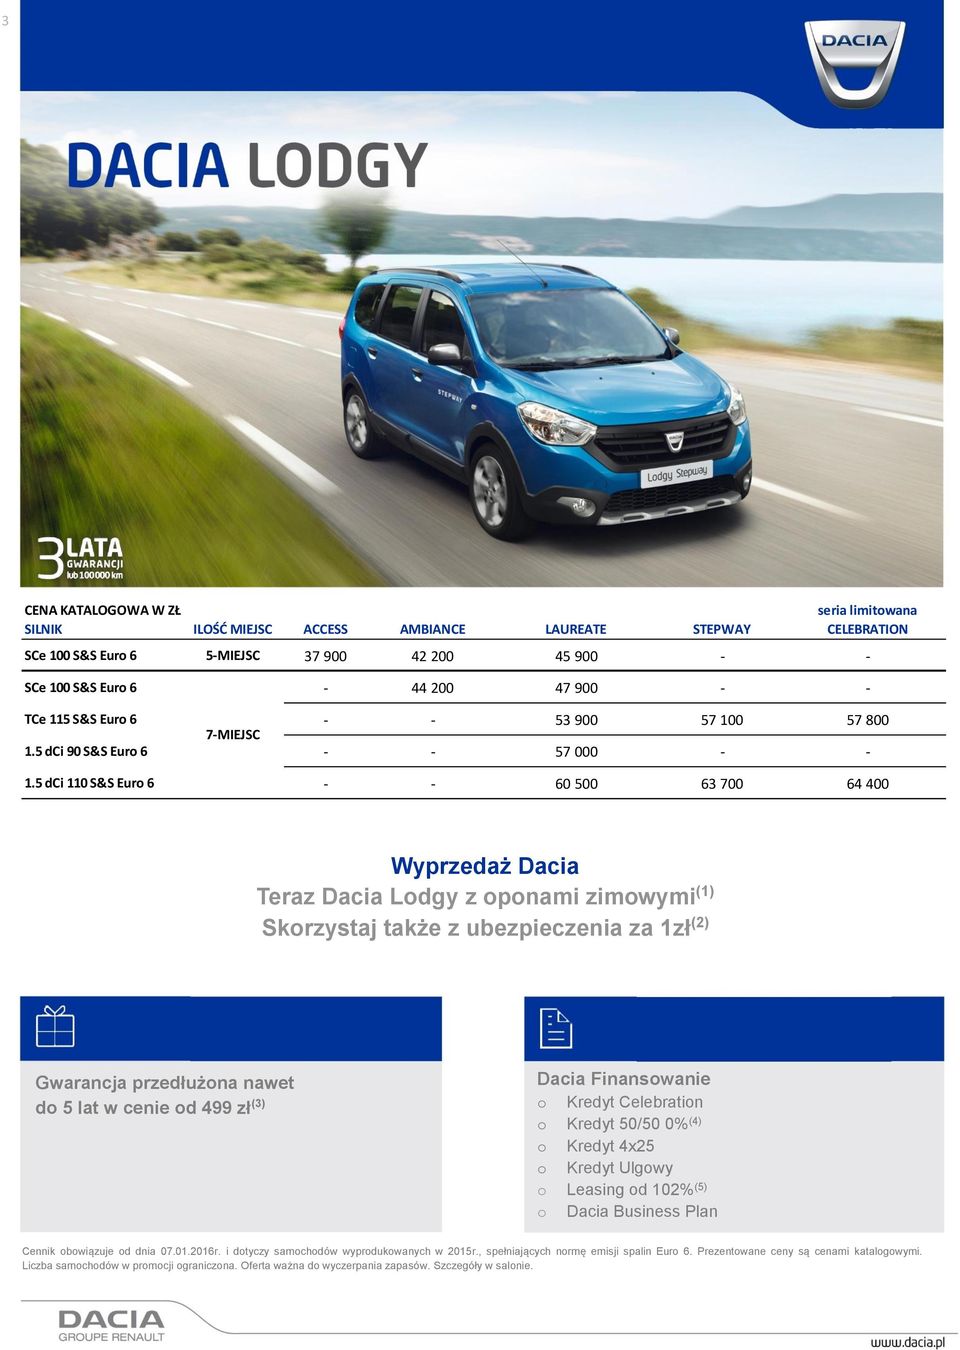 5 dci 110 S&S Euro 6 - - 60 500 63 700 64 400 Wyprzedaż Dacia Teraz Dacia Lodgy z oponami zimowymi (1) Skorzystaj także z ubezpieczenia za 1zł (2) Gwarancja przedłużona nawet do 5 lat w cenie od 499